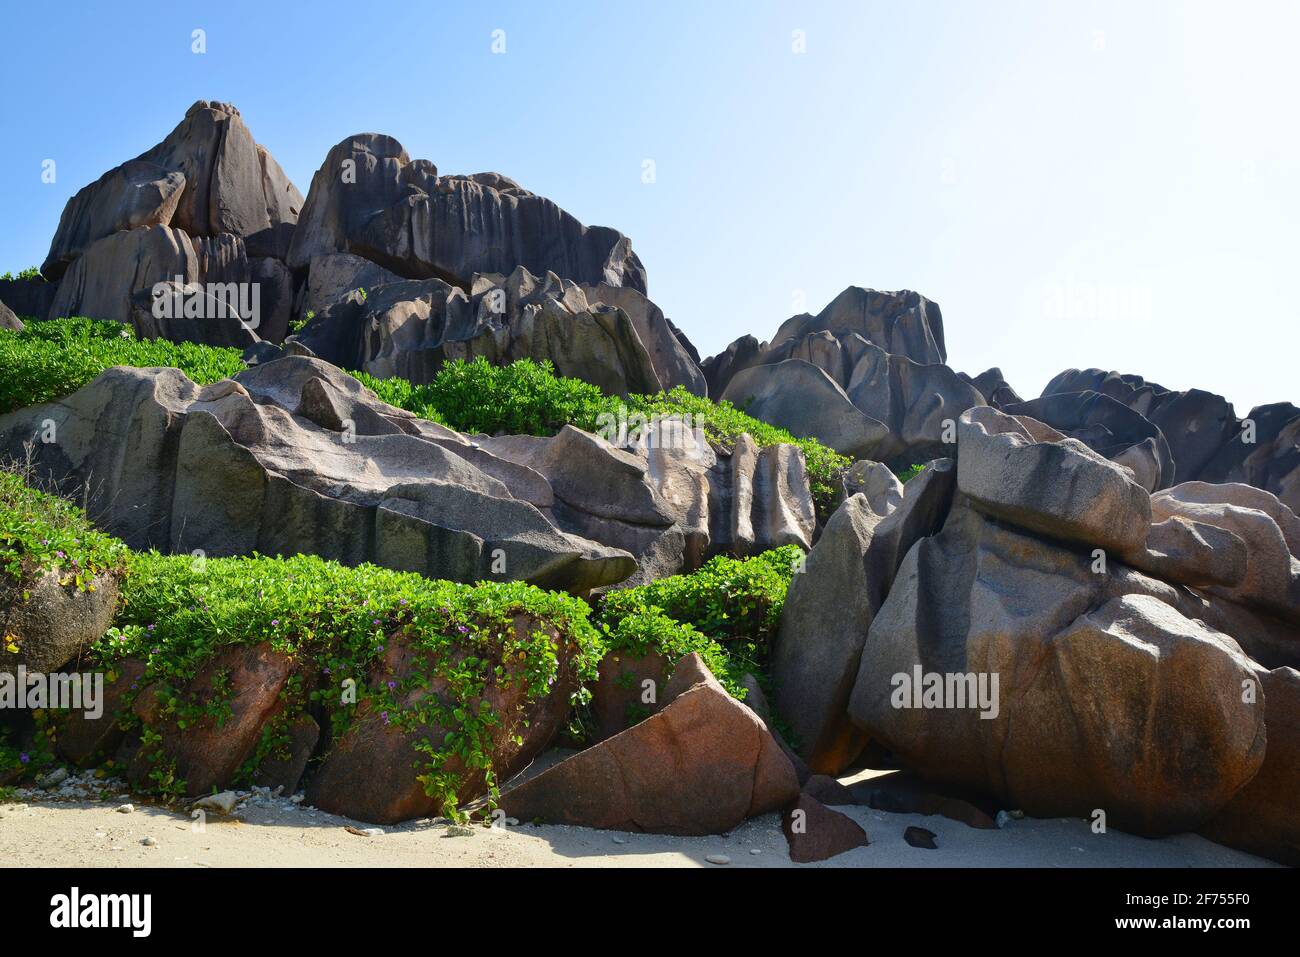 De grandes roches de granit près d'Anse Songe. Île de la Digue, Seychelles. Banque D'Images